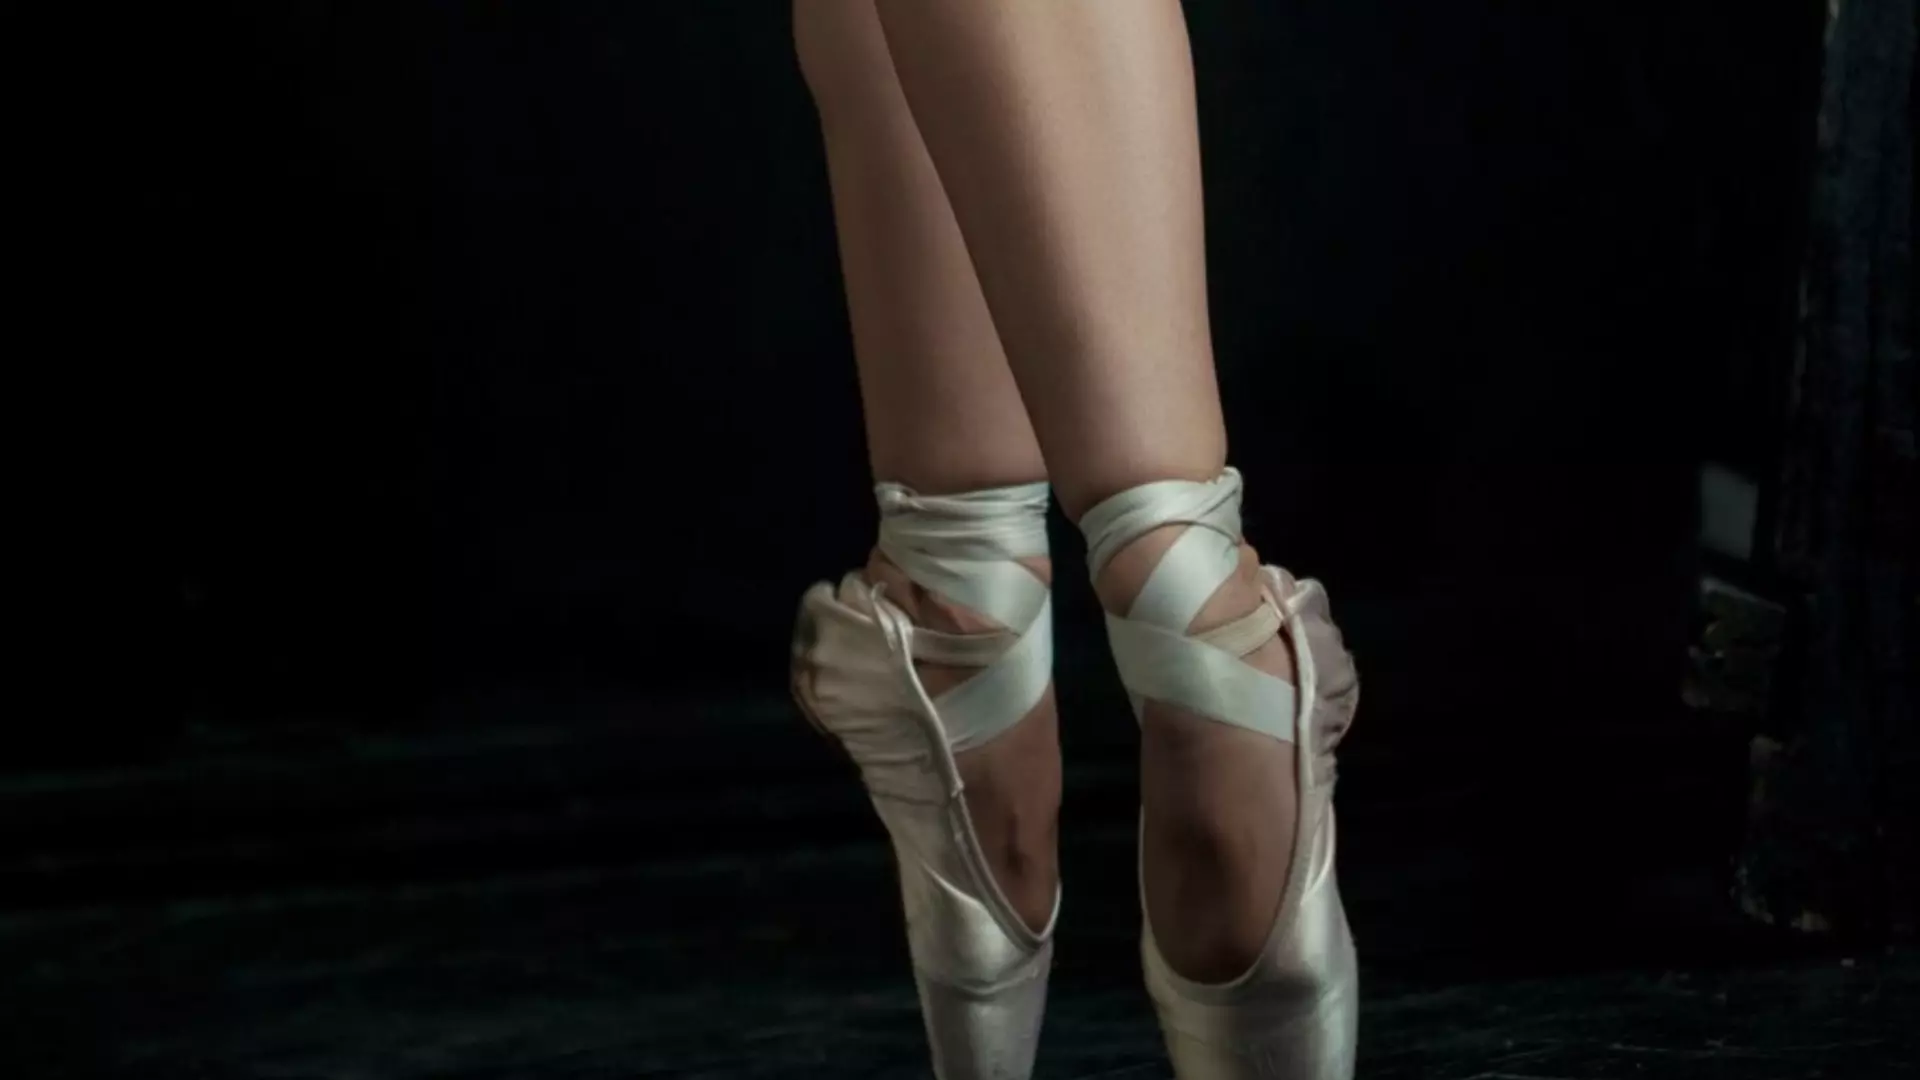 Китайский бизнесмен обвинил красноярскую балерину в мошенничестве